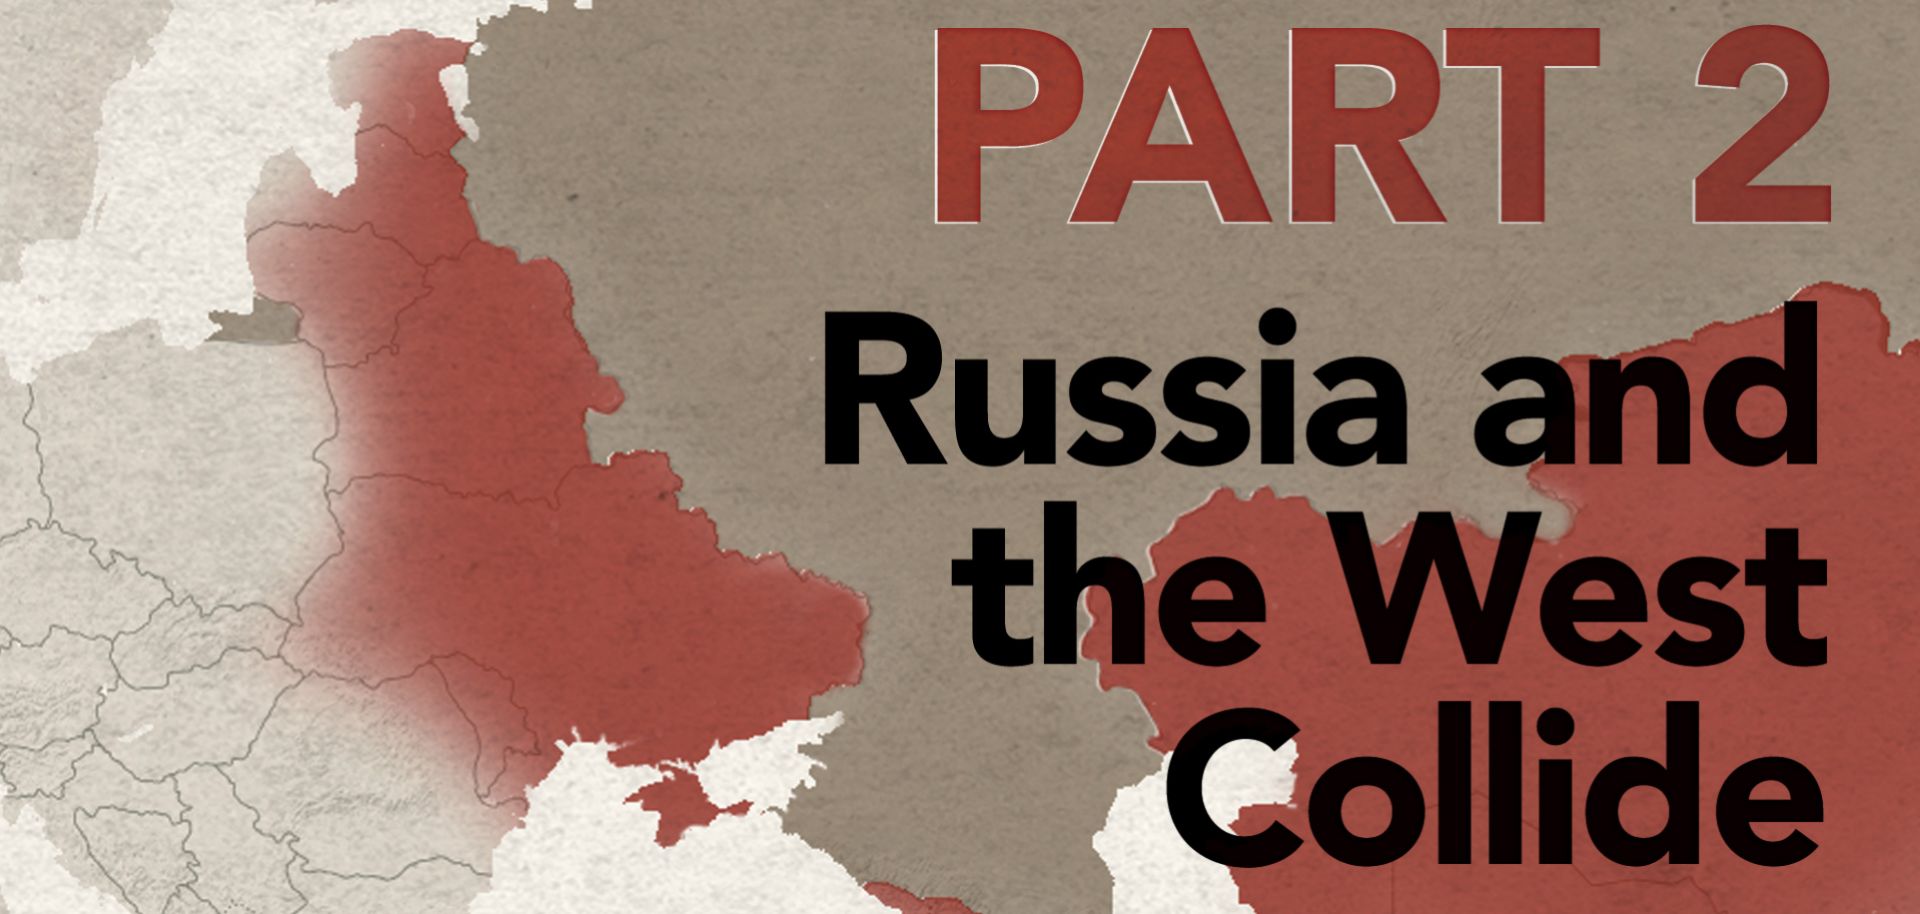 As Ukraine reorients itself toward Europe, its ties with Russia will weaken. 